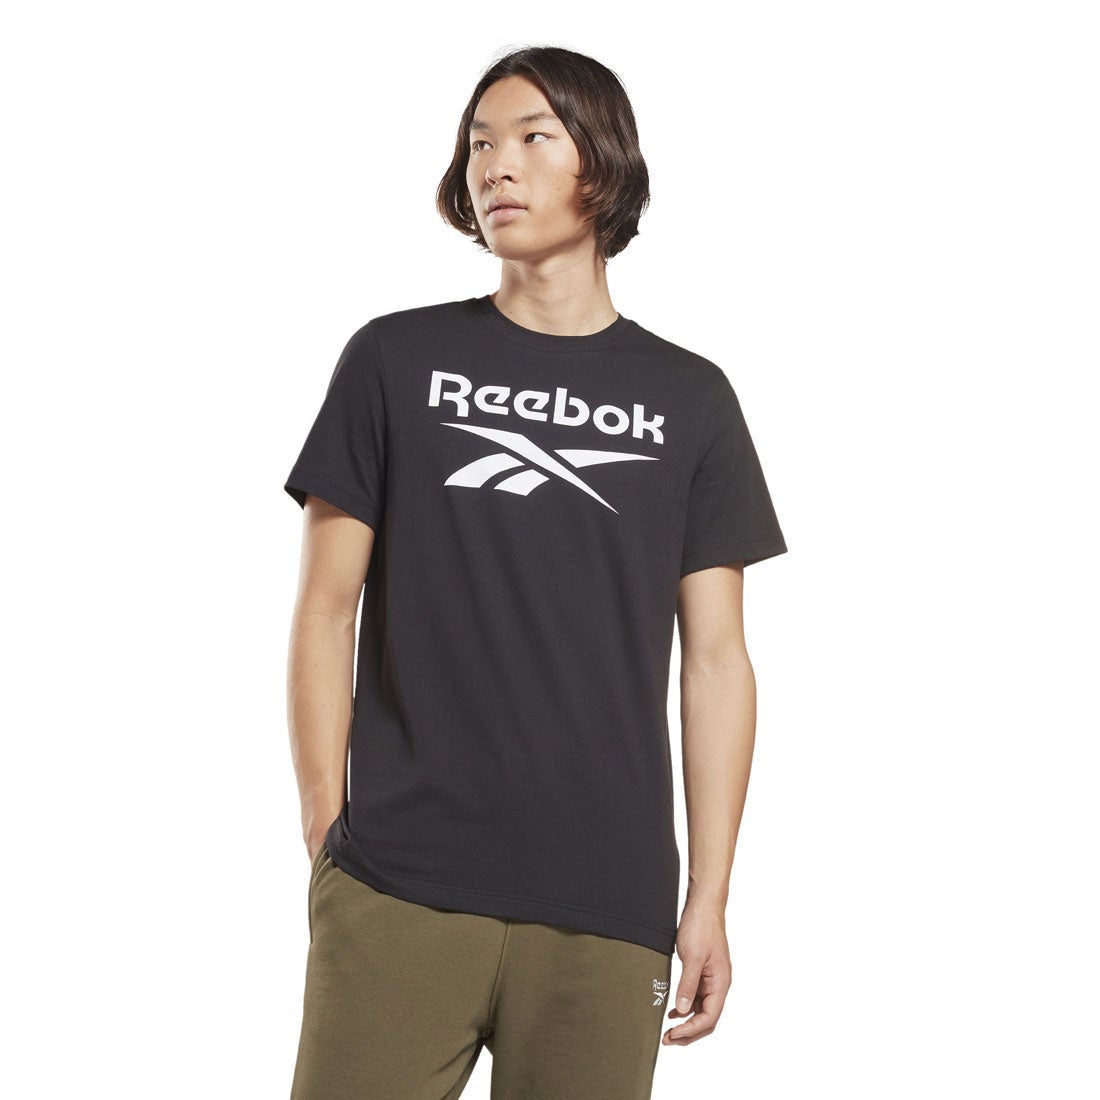 アイデンティティ ビッグ ロゴ Tシャツ / Identity Big Logo T-Shirt （ブラック）